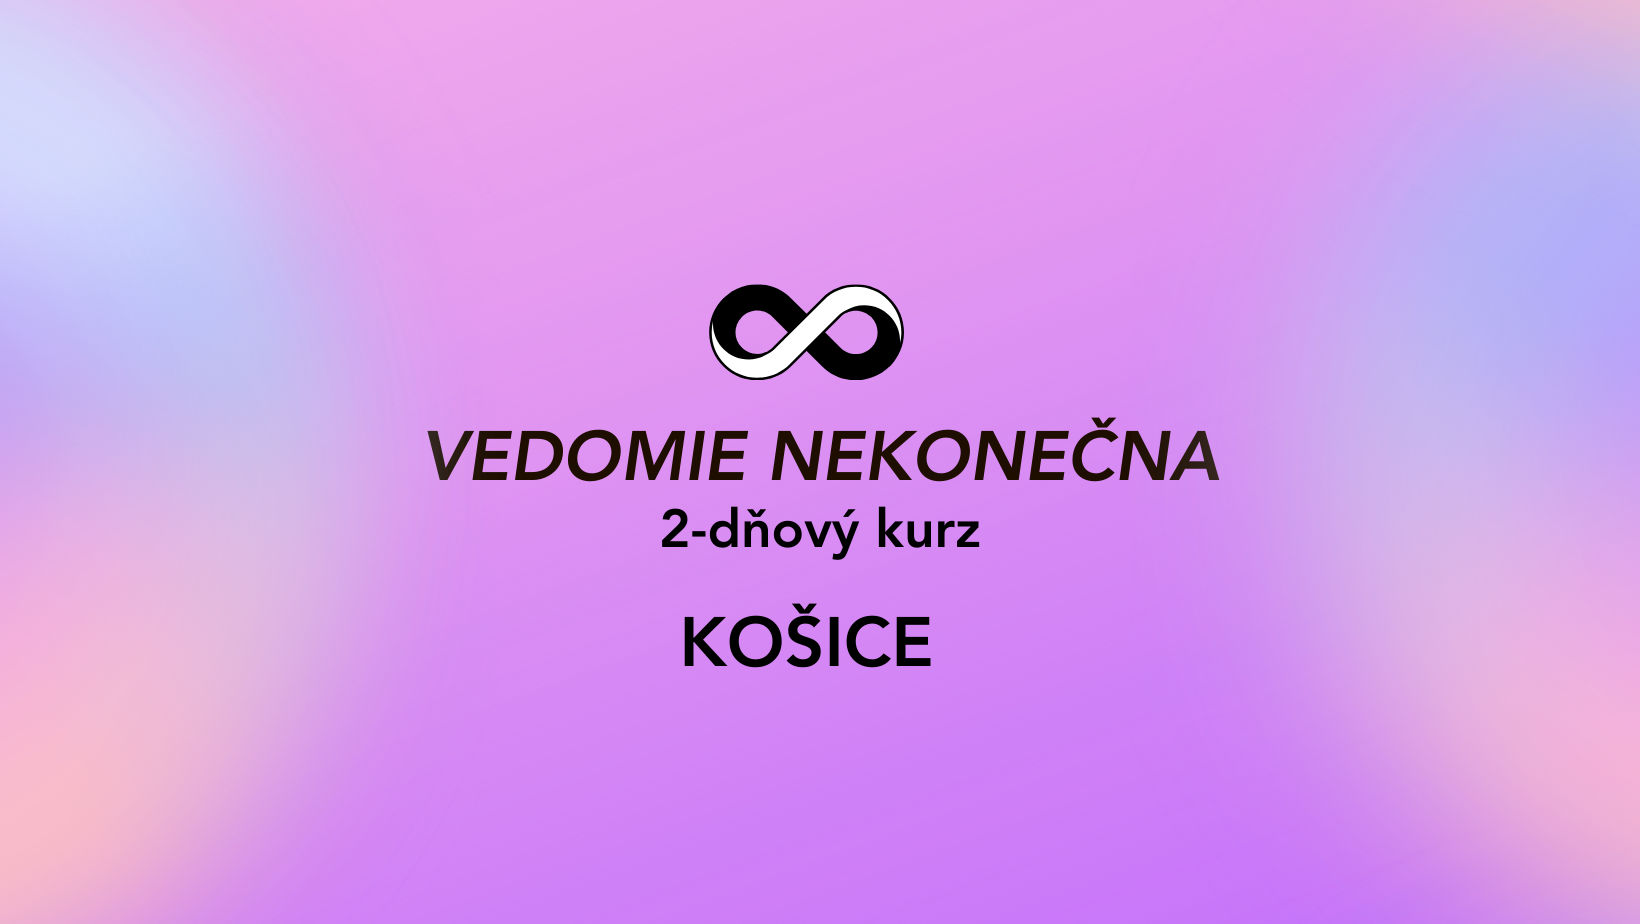 VEDOMIE NEKONEČNA, Košice 